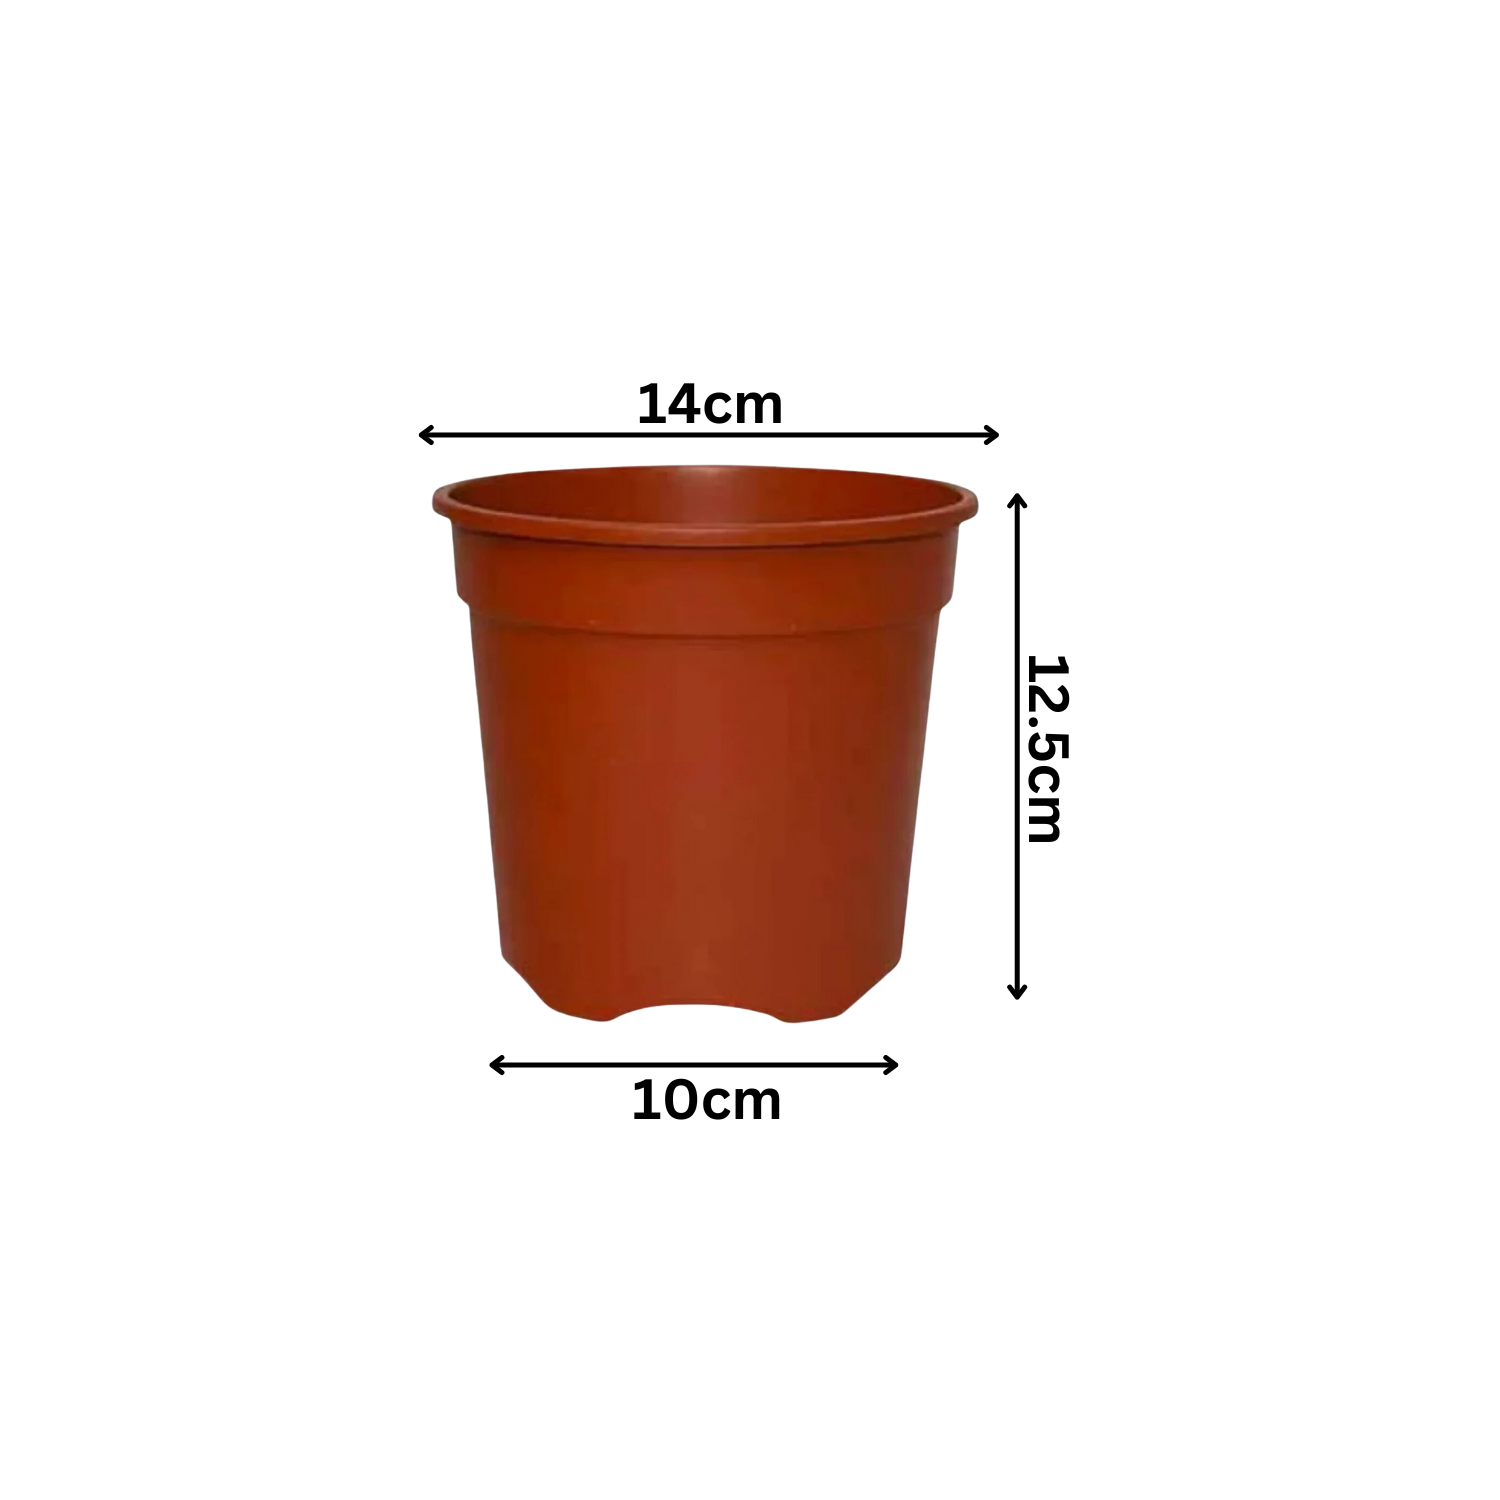 5 Inch Gro Pro Terracotta Plastic Pot for Home & Garden